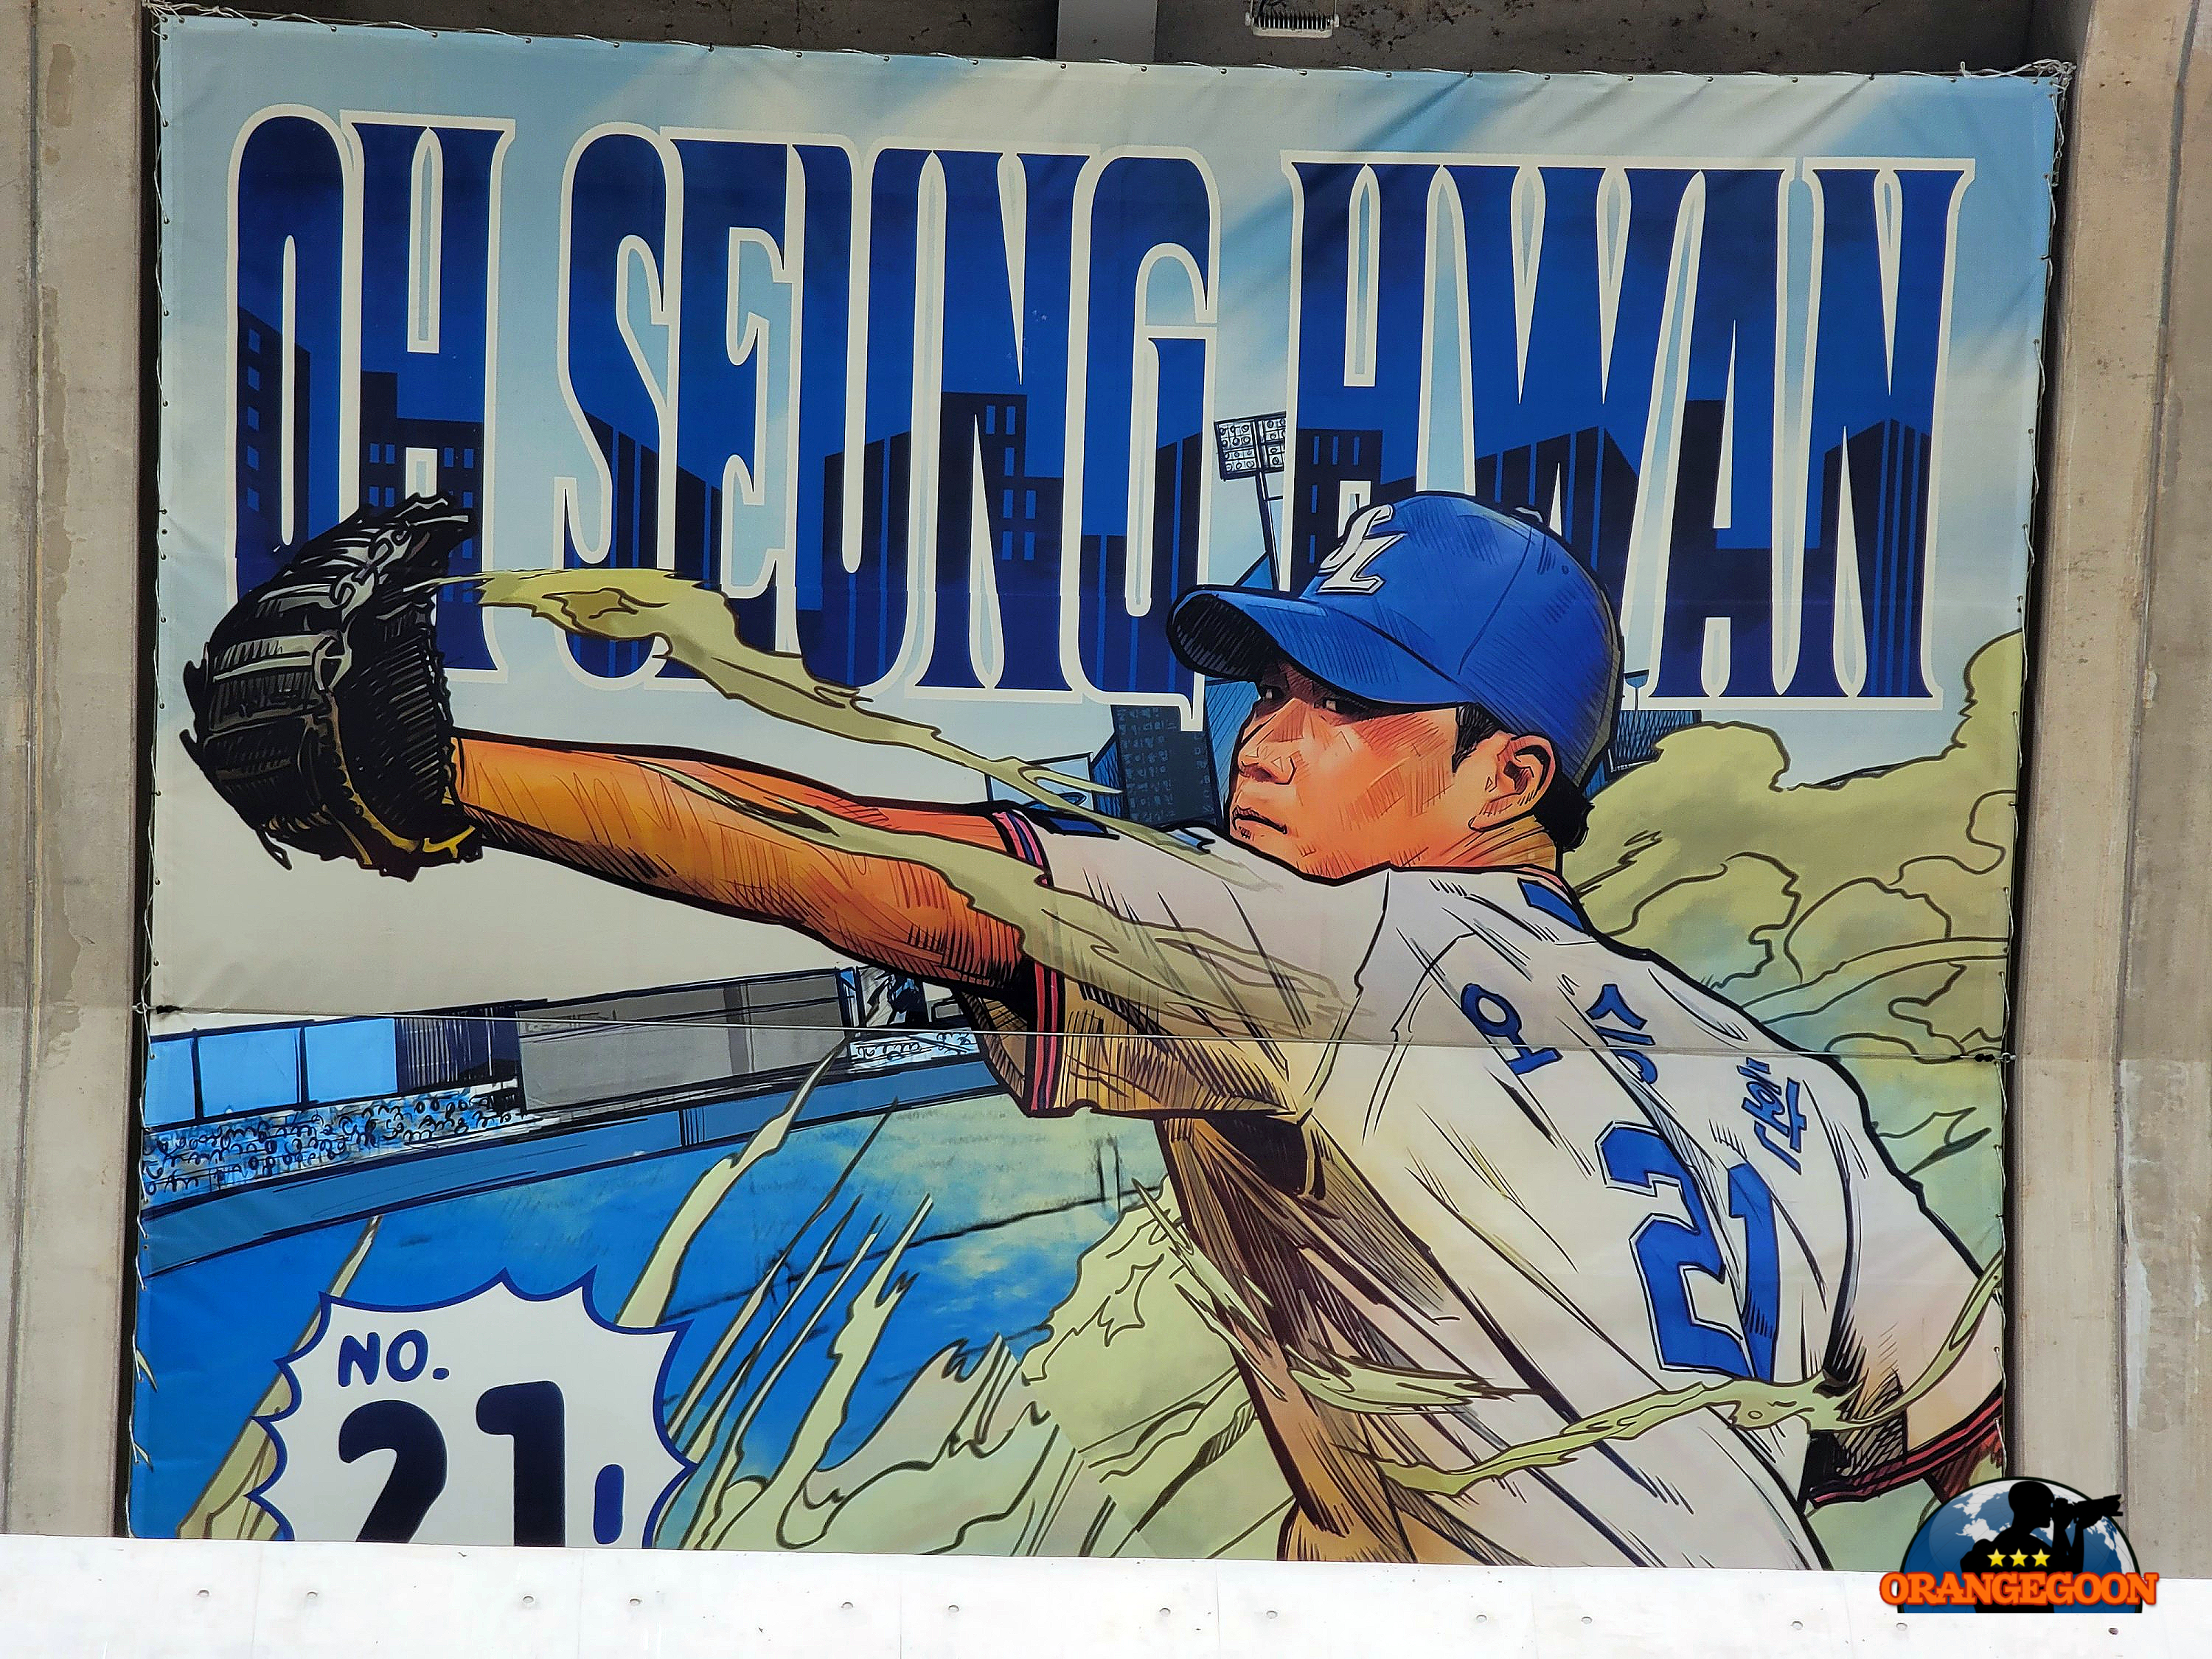 (대구 수성구 / 대구 삼성 라이온즈 파크 #1) 대한민국 최초의 팔각 야구장. 대구 야구의 새로운 시대를 연 최첨단 야구장